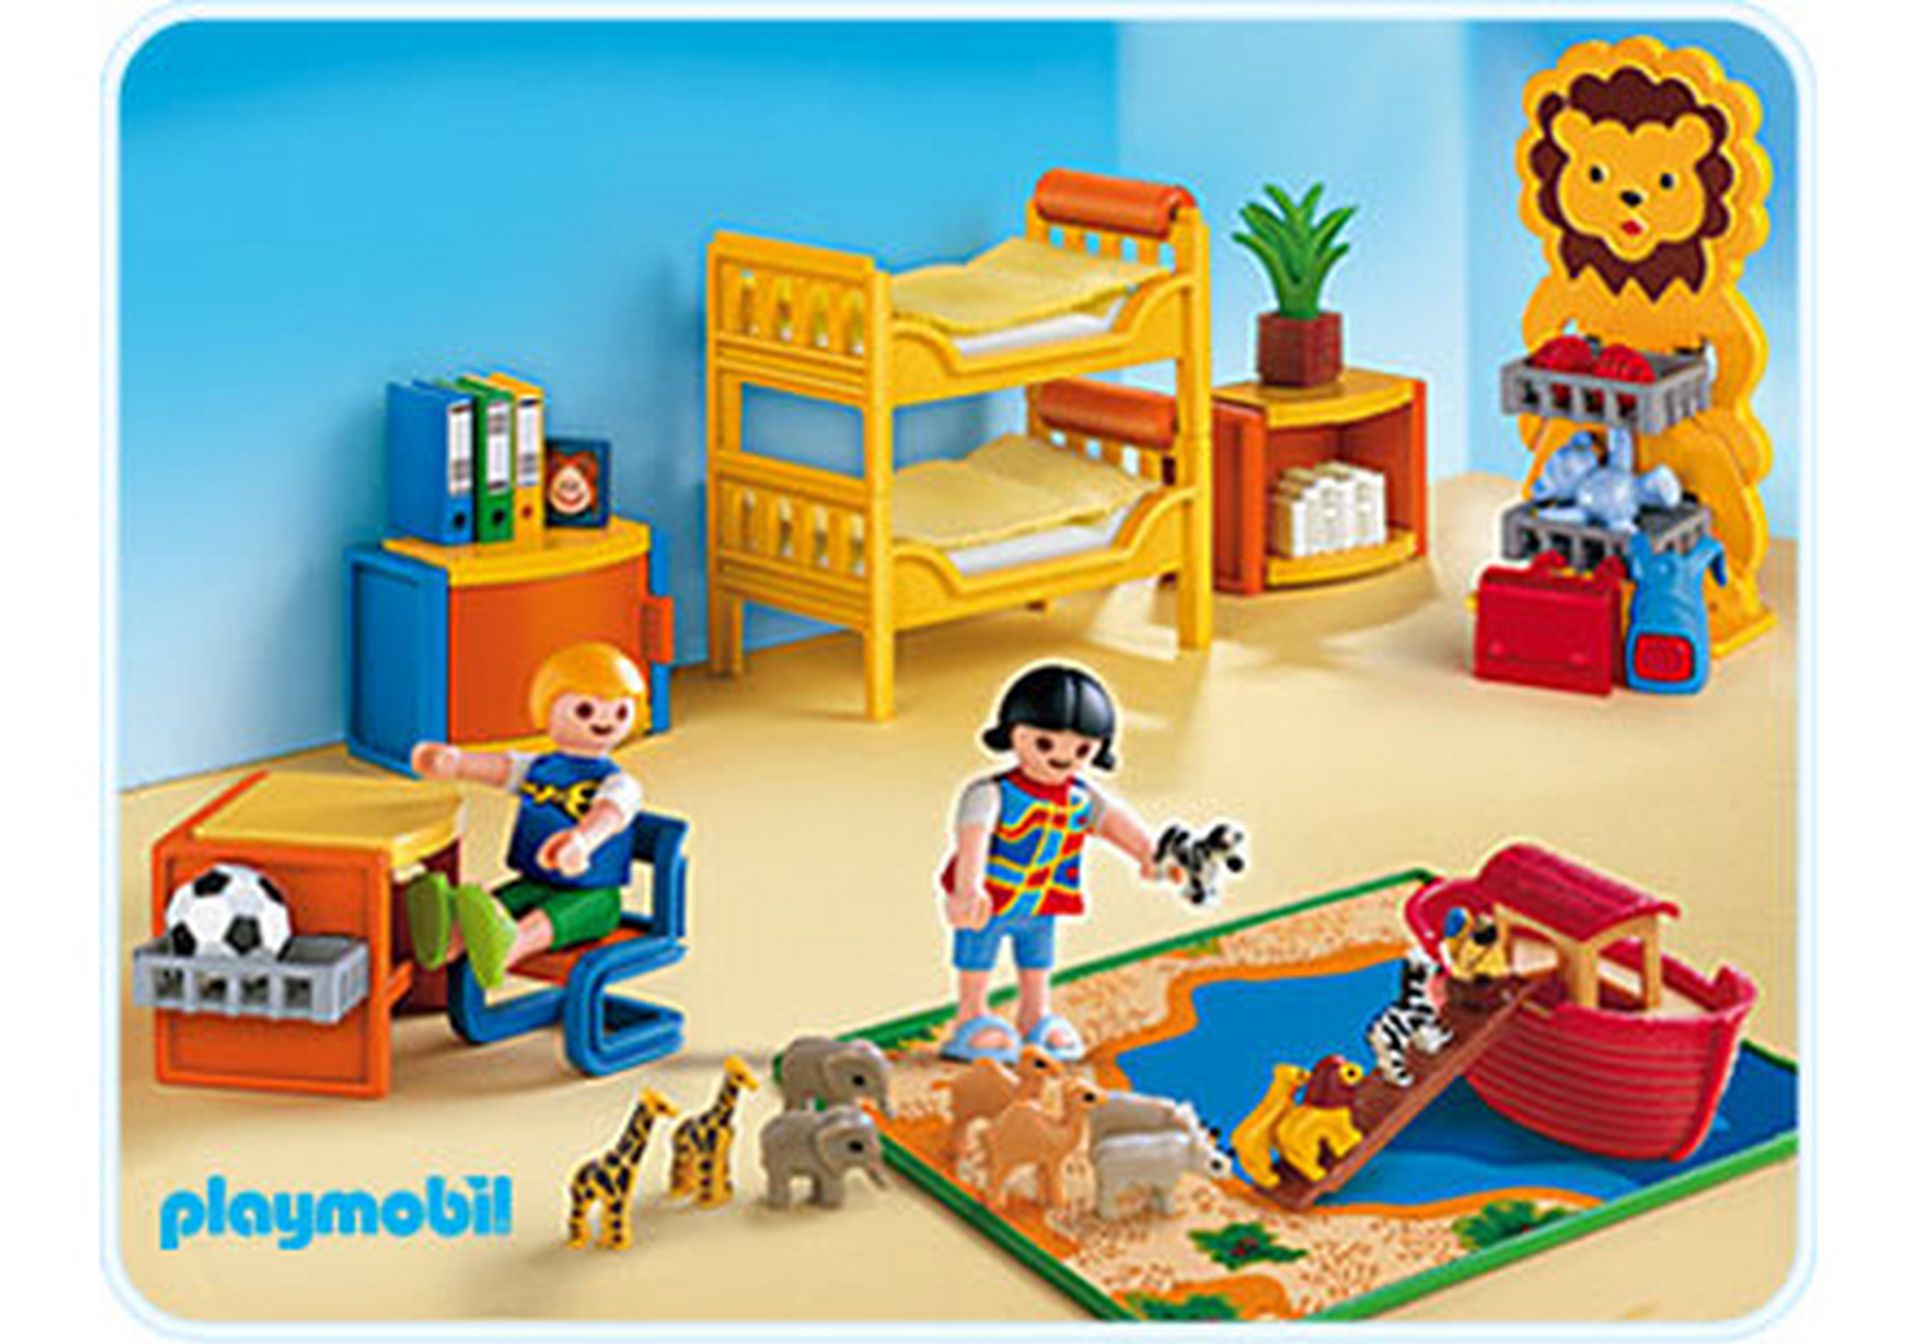 Playmobil Zubehör für Babyzimmer Kinderzimmer 4287,3207,5333,5494,4404,5311 